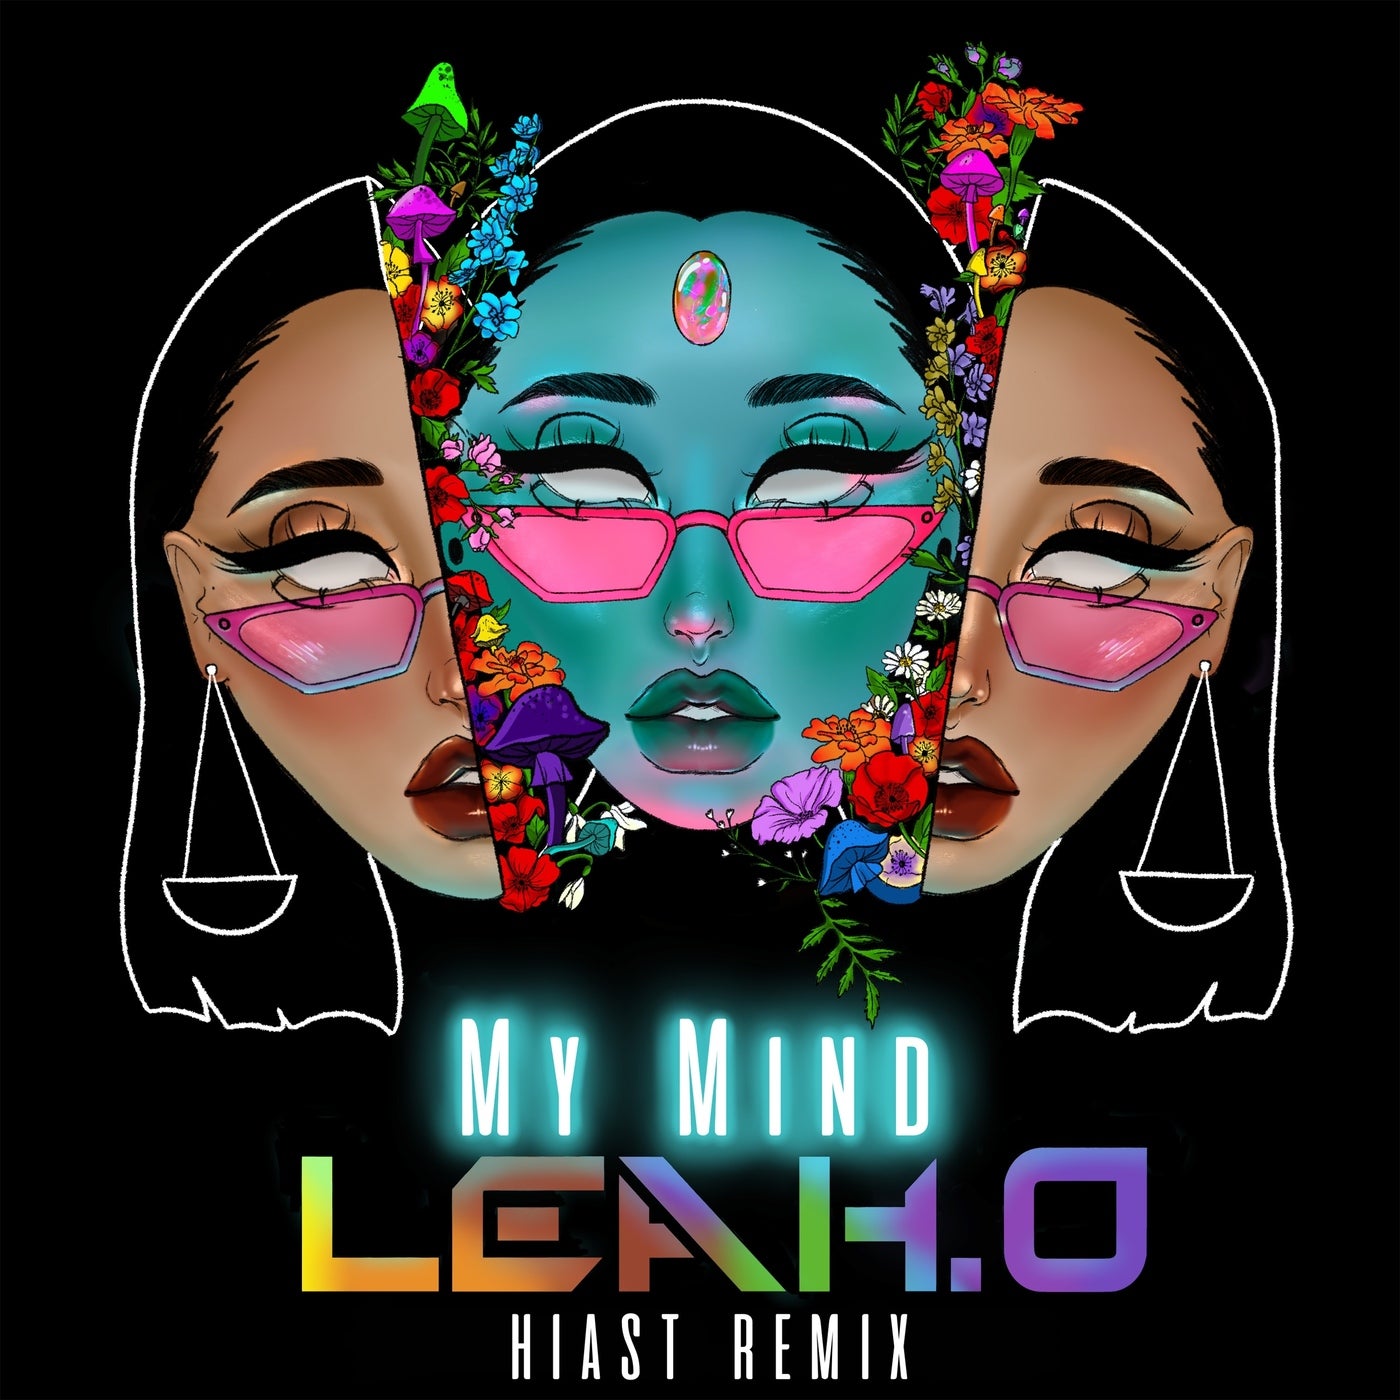 My Mind - Hiast Remix